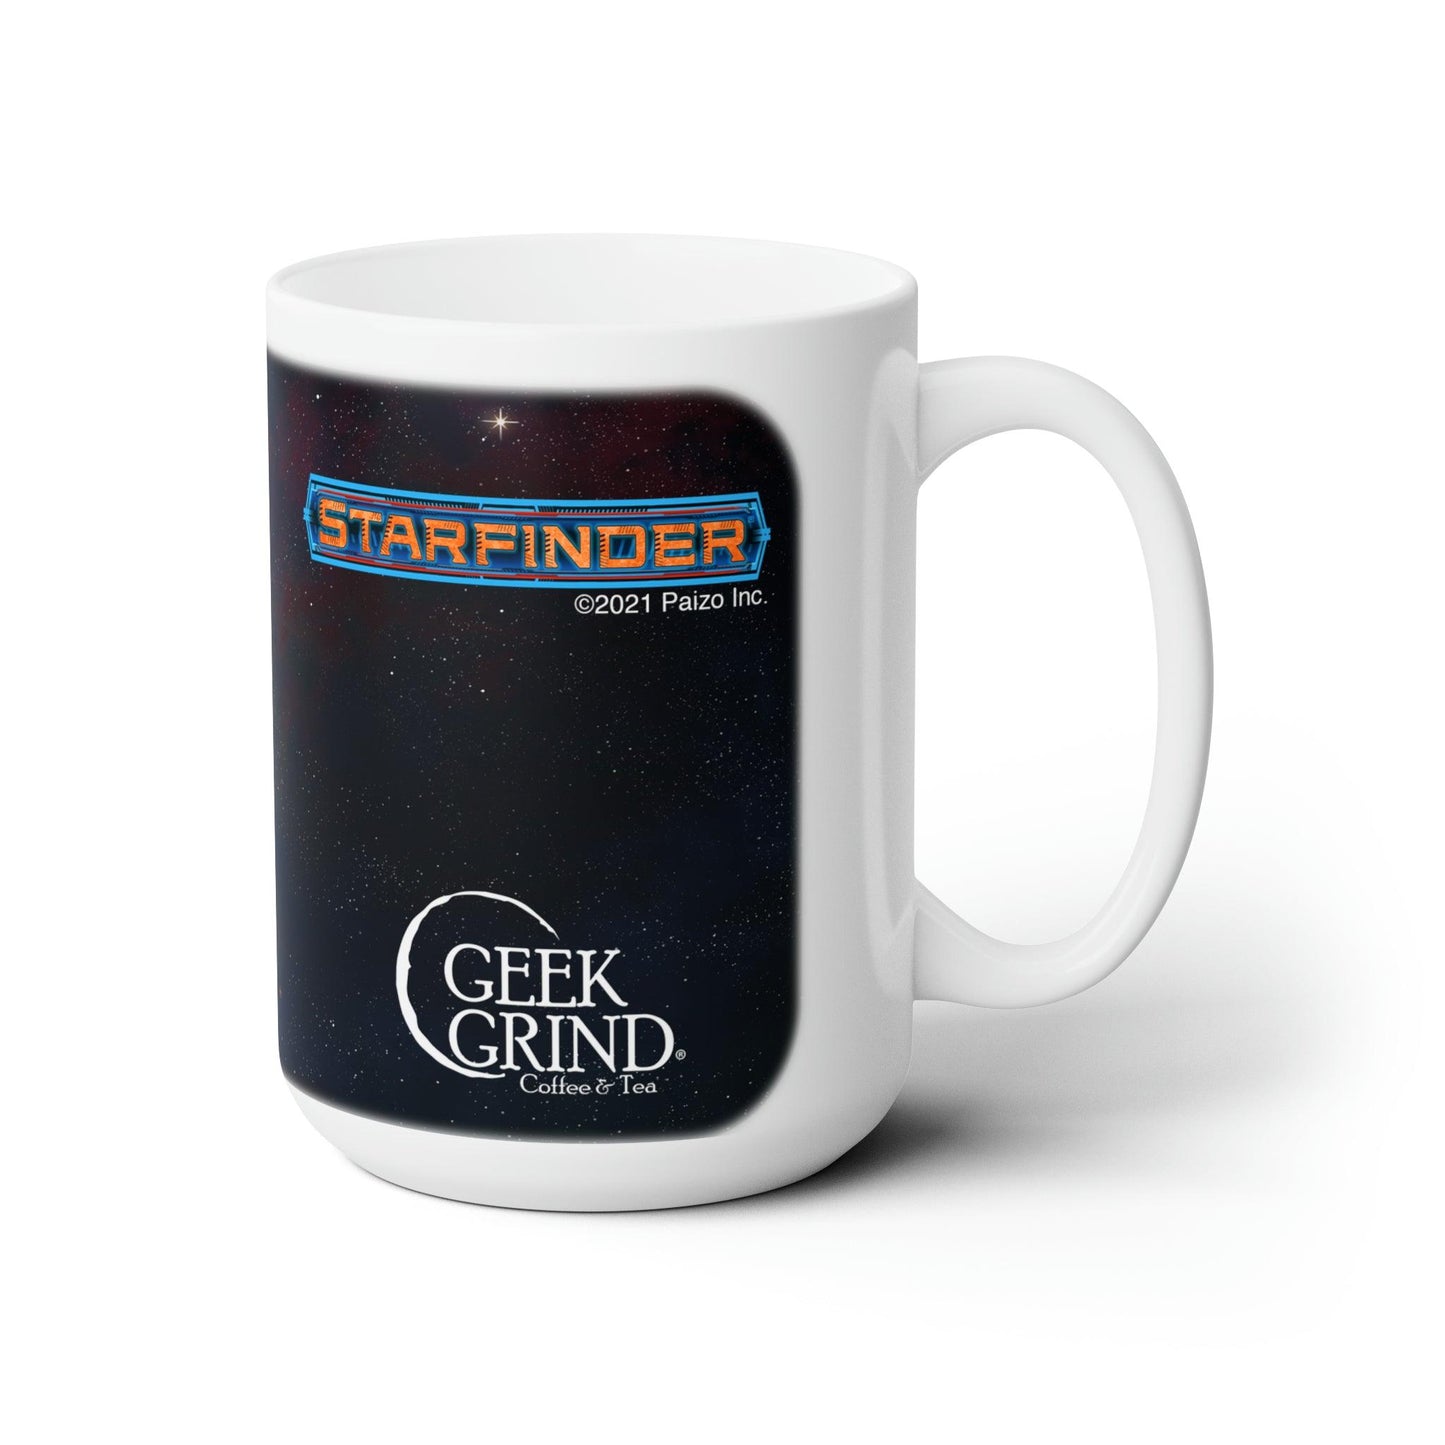 Starfinder - Pathfinder Mug - Geek Grind Coffee